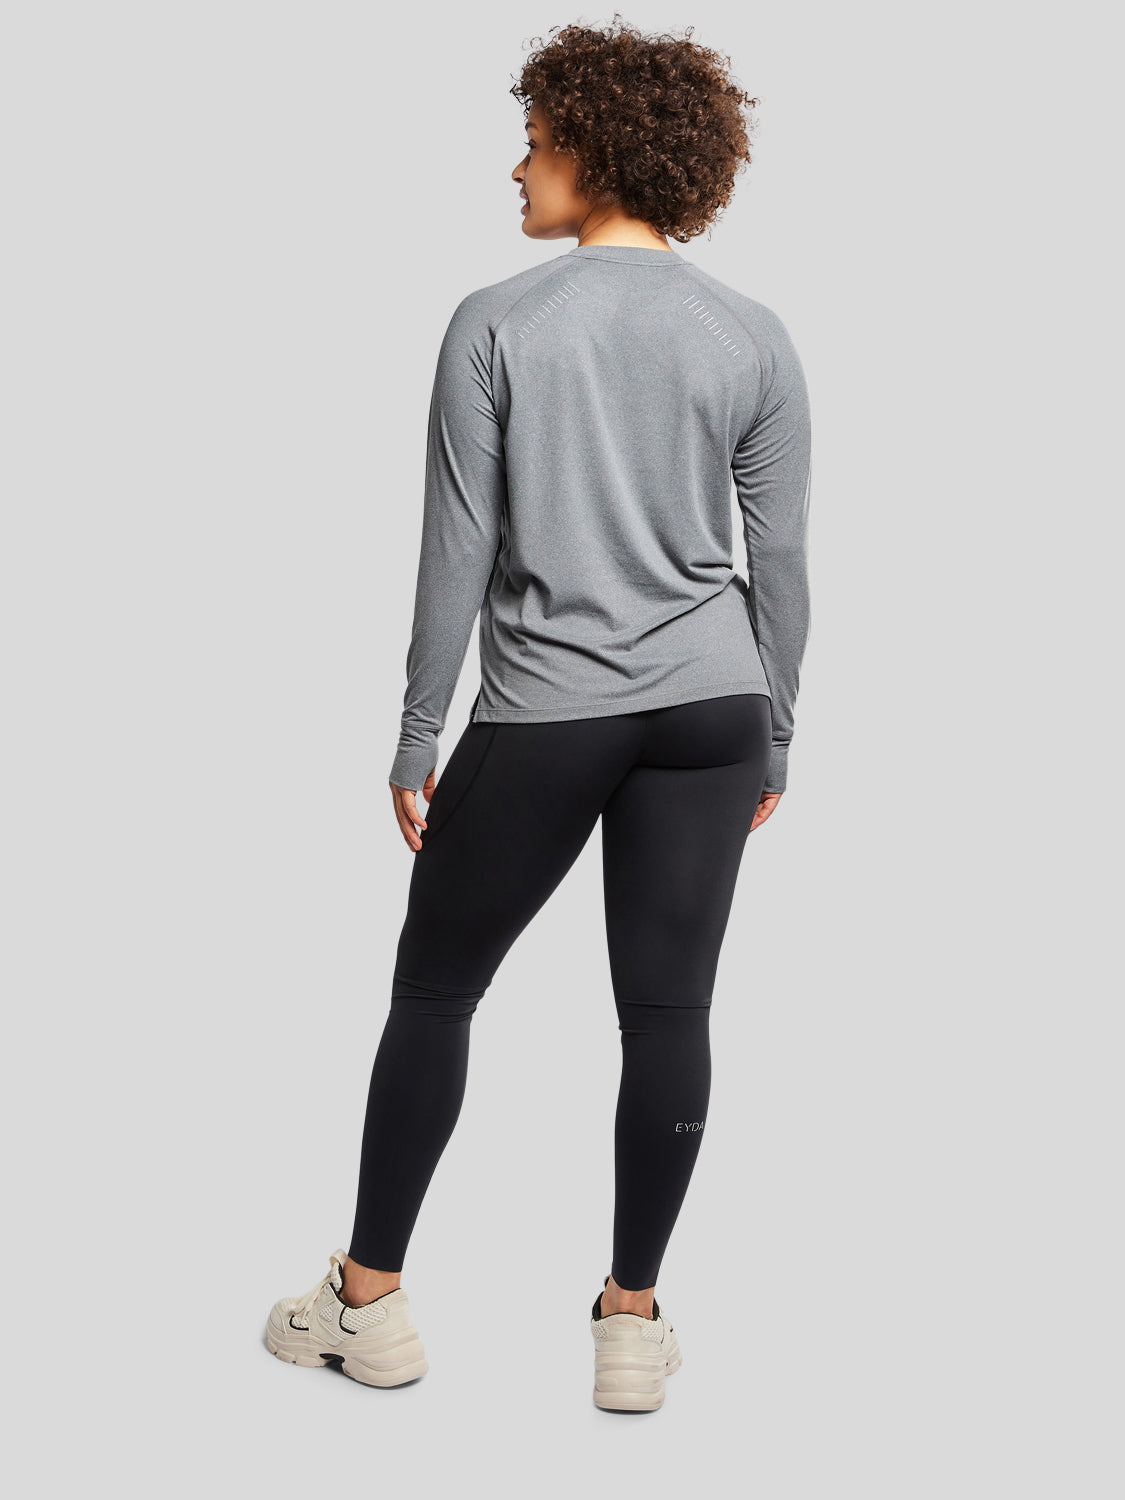 kvinde bagfra med træningstrøje i farven dark grey og sorte tights